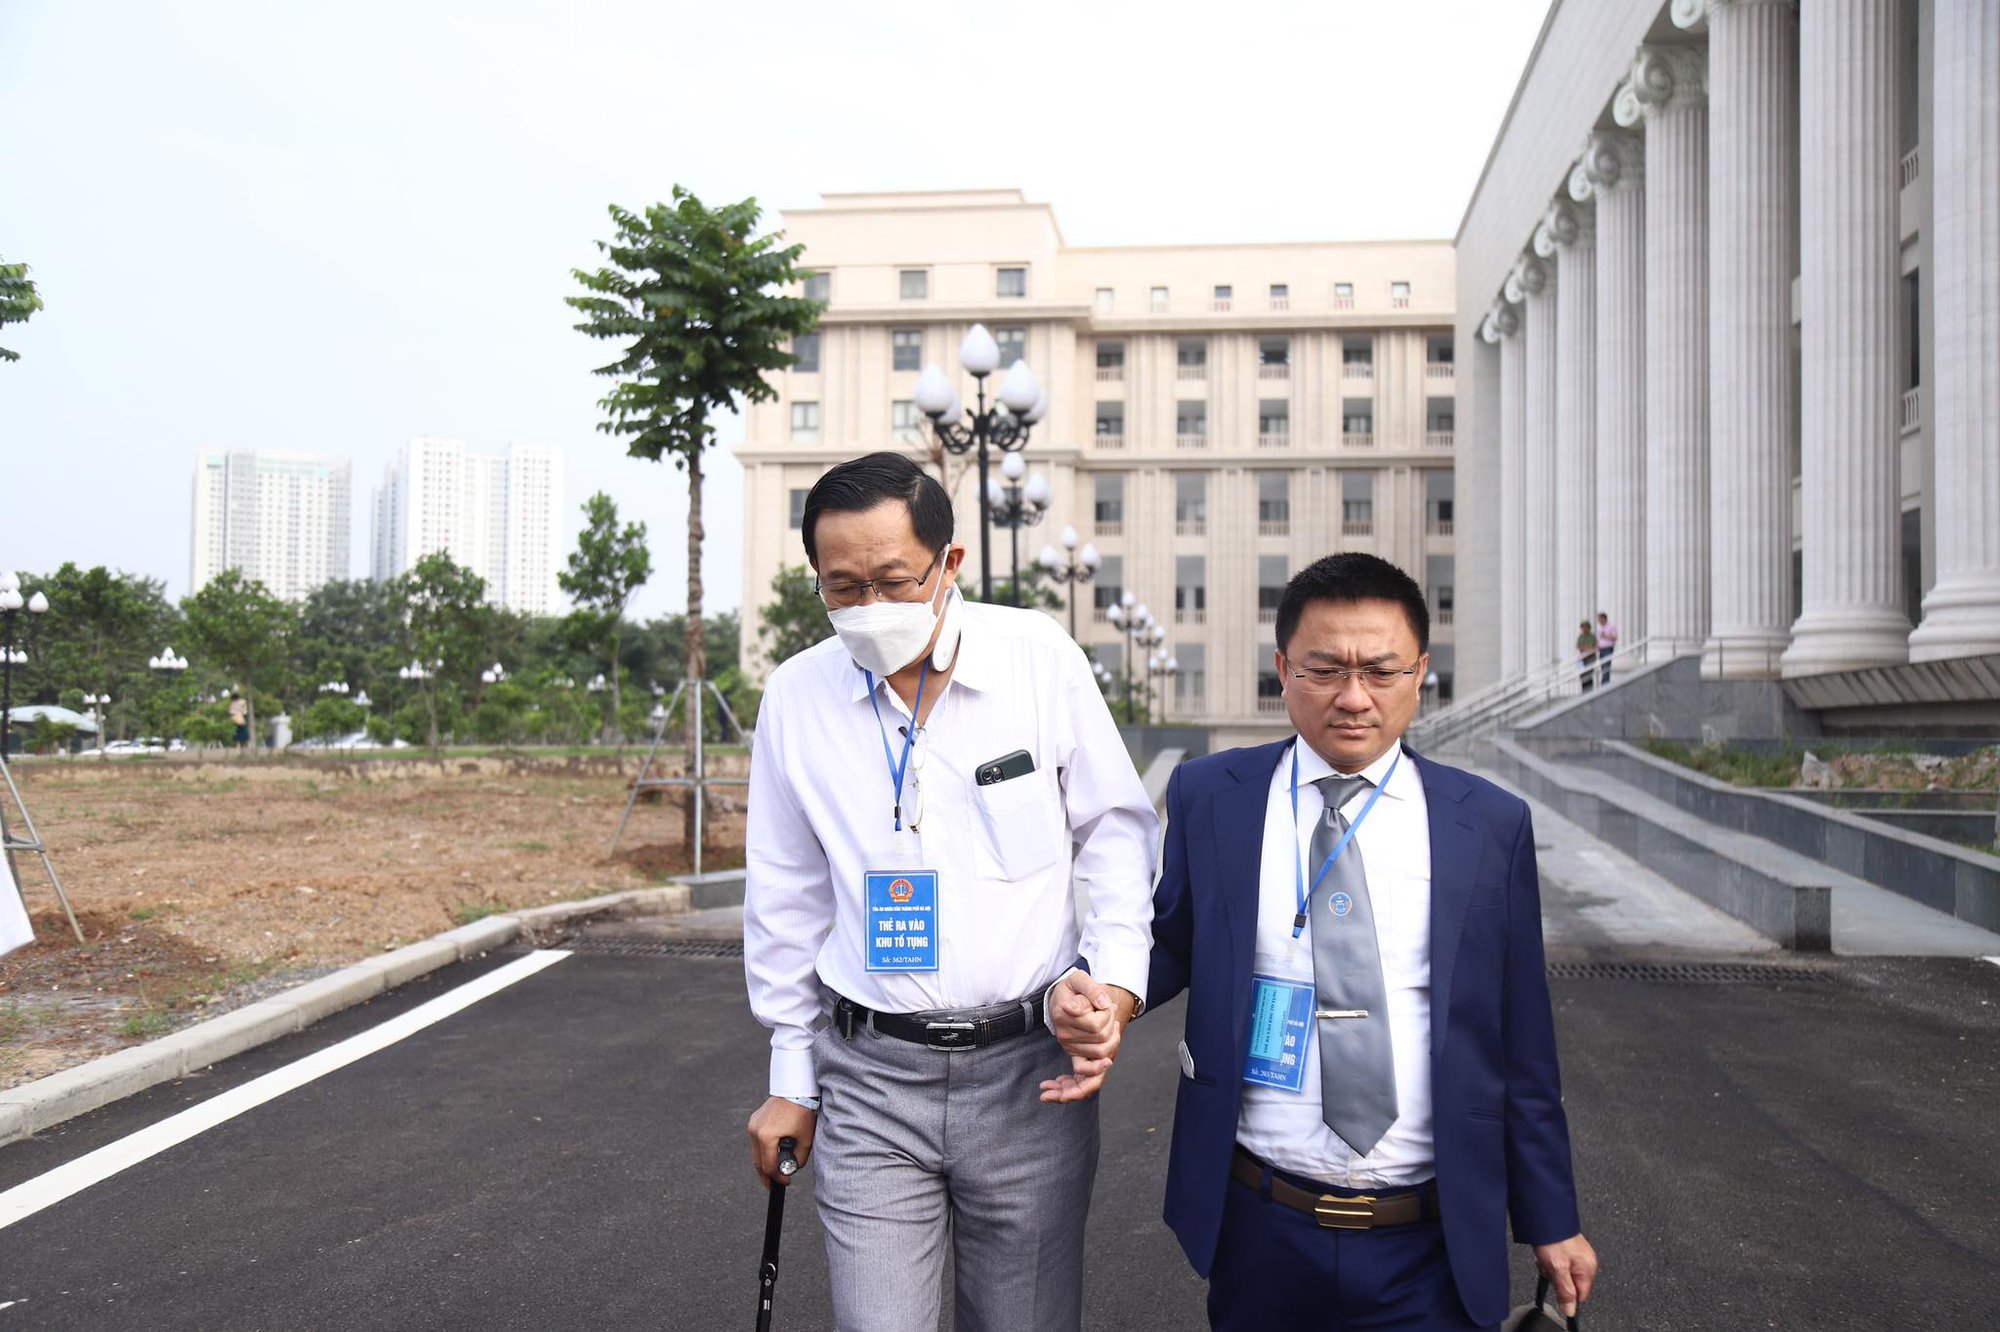 Đang hầu tòa, cựu Thứ trưởng Cao Minh Quang phải nhập viện cấp cứu - Ảnh 1.